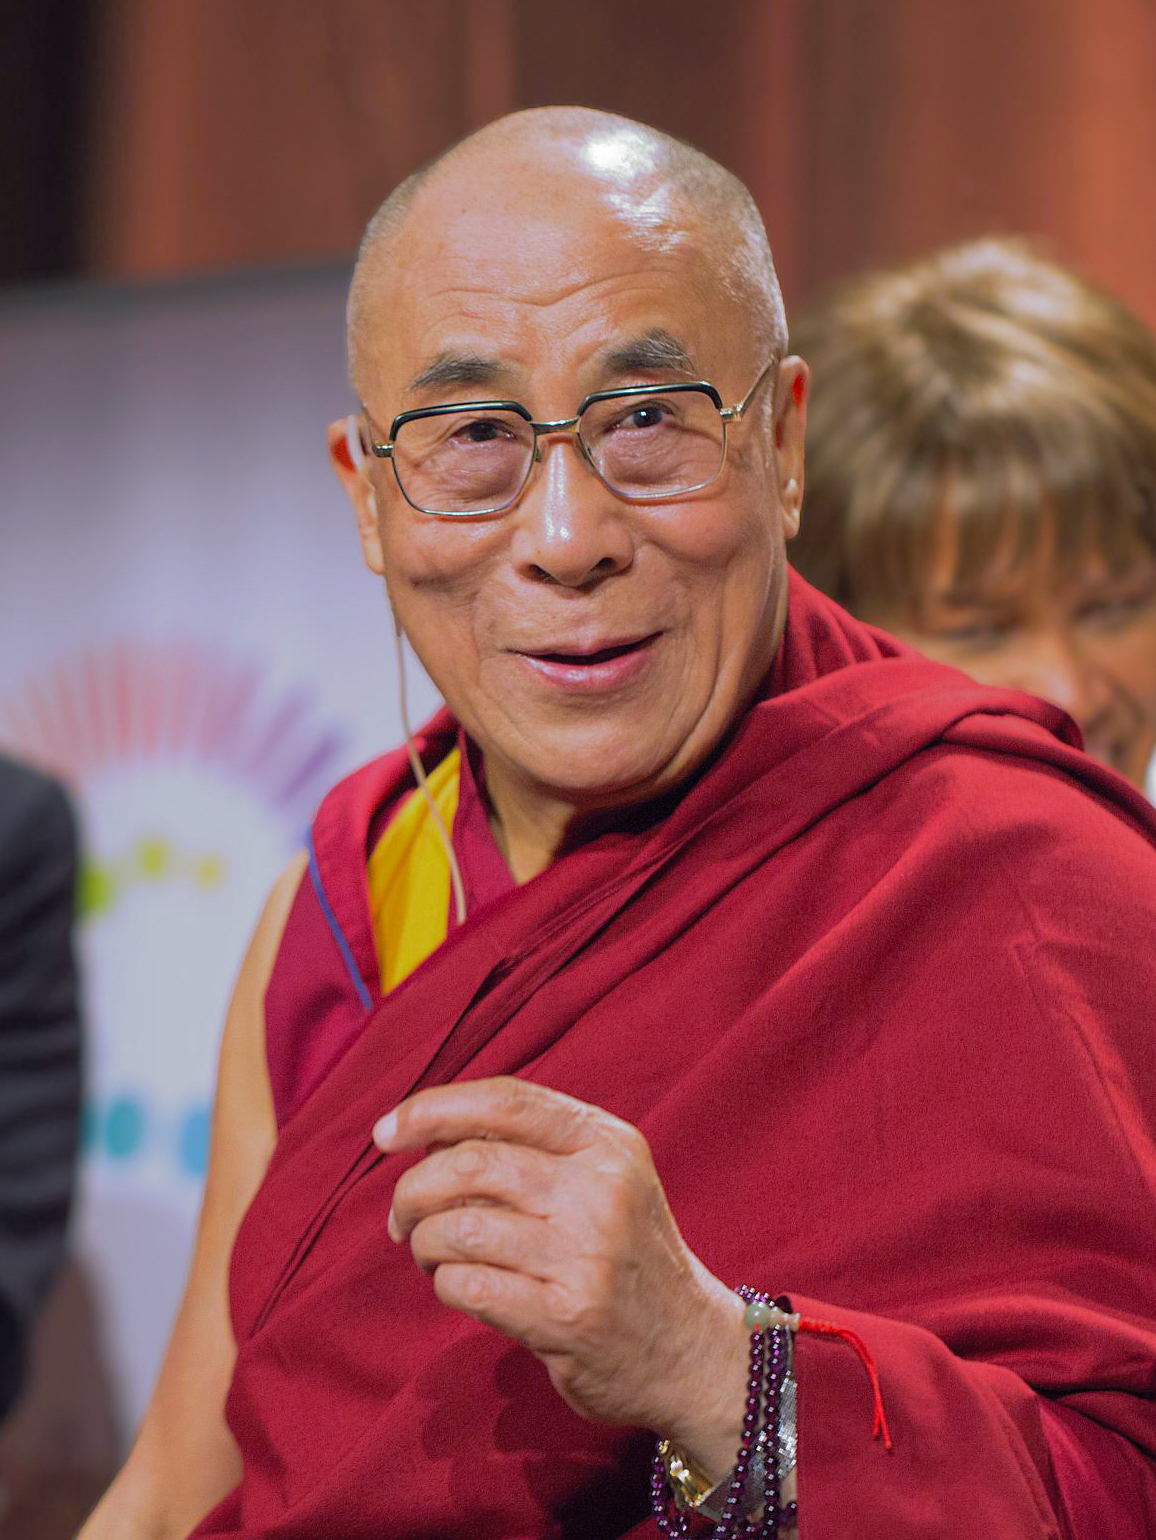 Yazar Dalai Lama